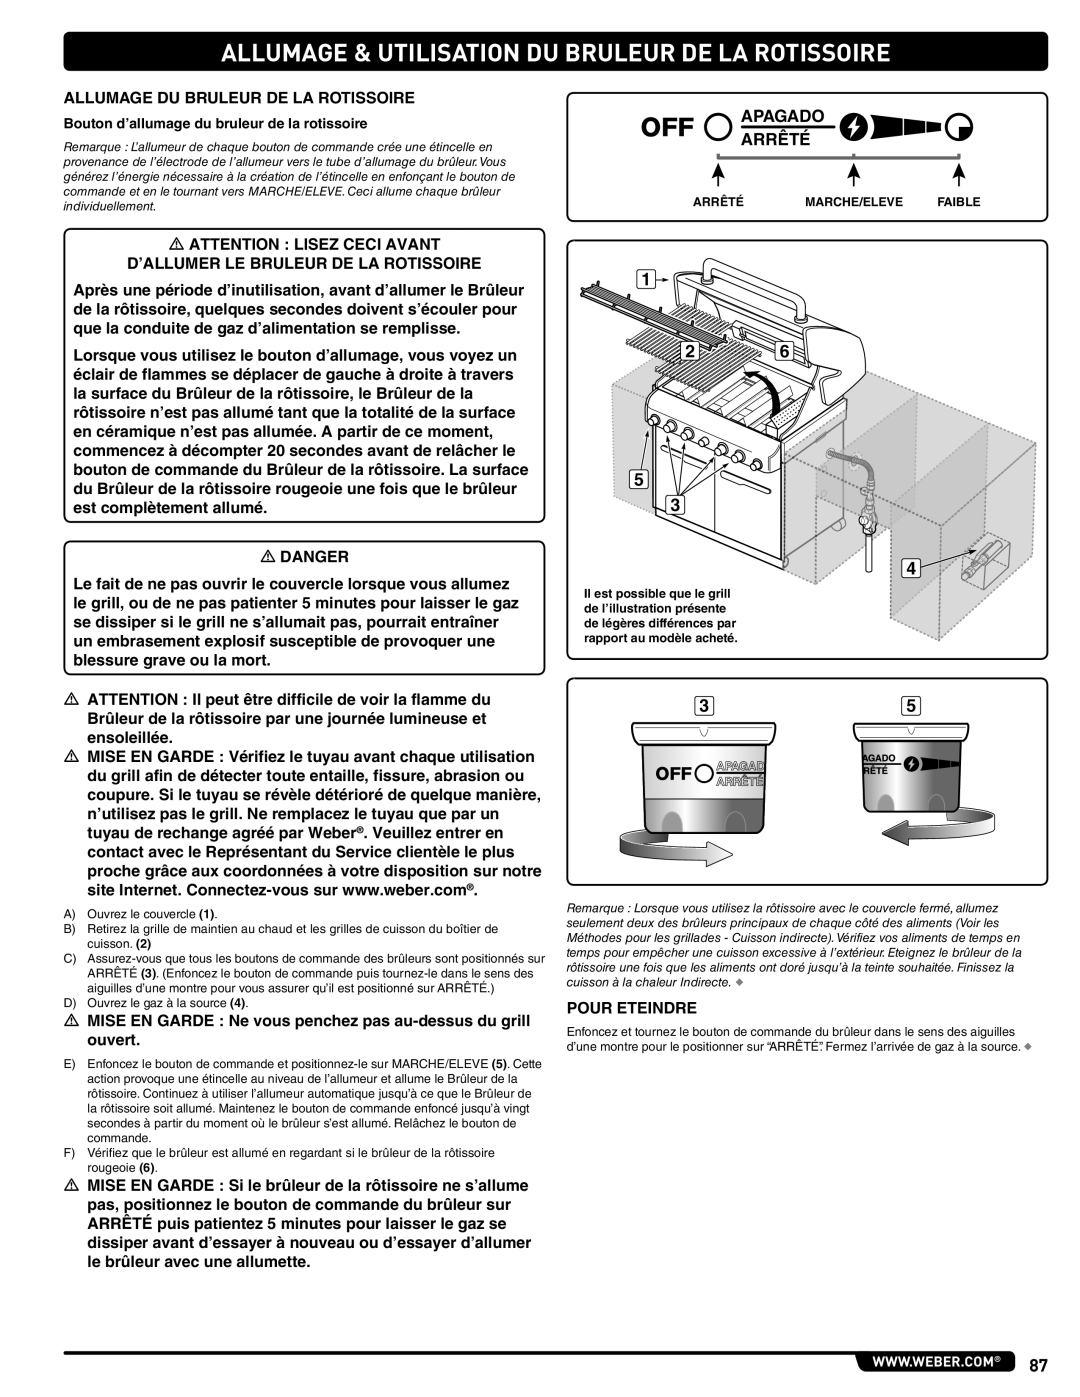 Weber 56576 manual Allumage & Utilisation Du Bruleur De La Rotissoire, Apagado Arrêté 